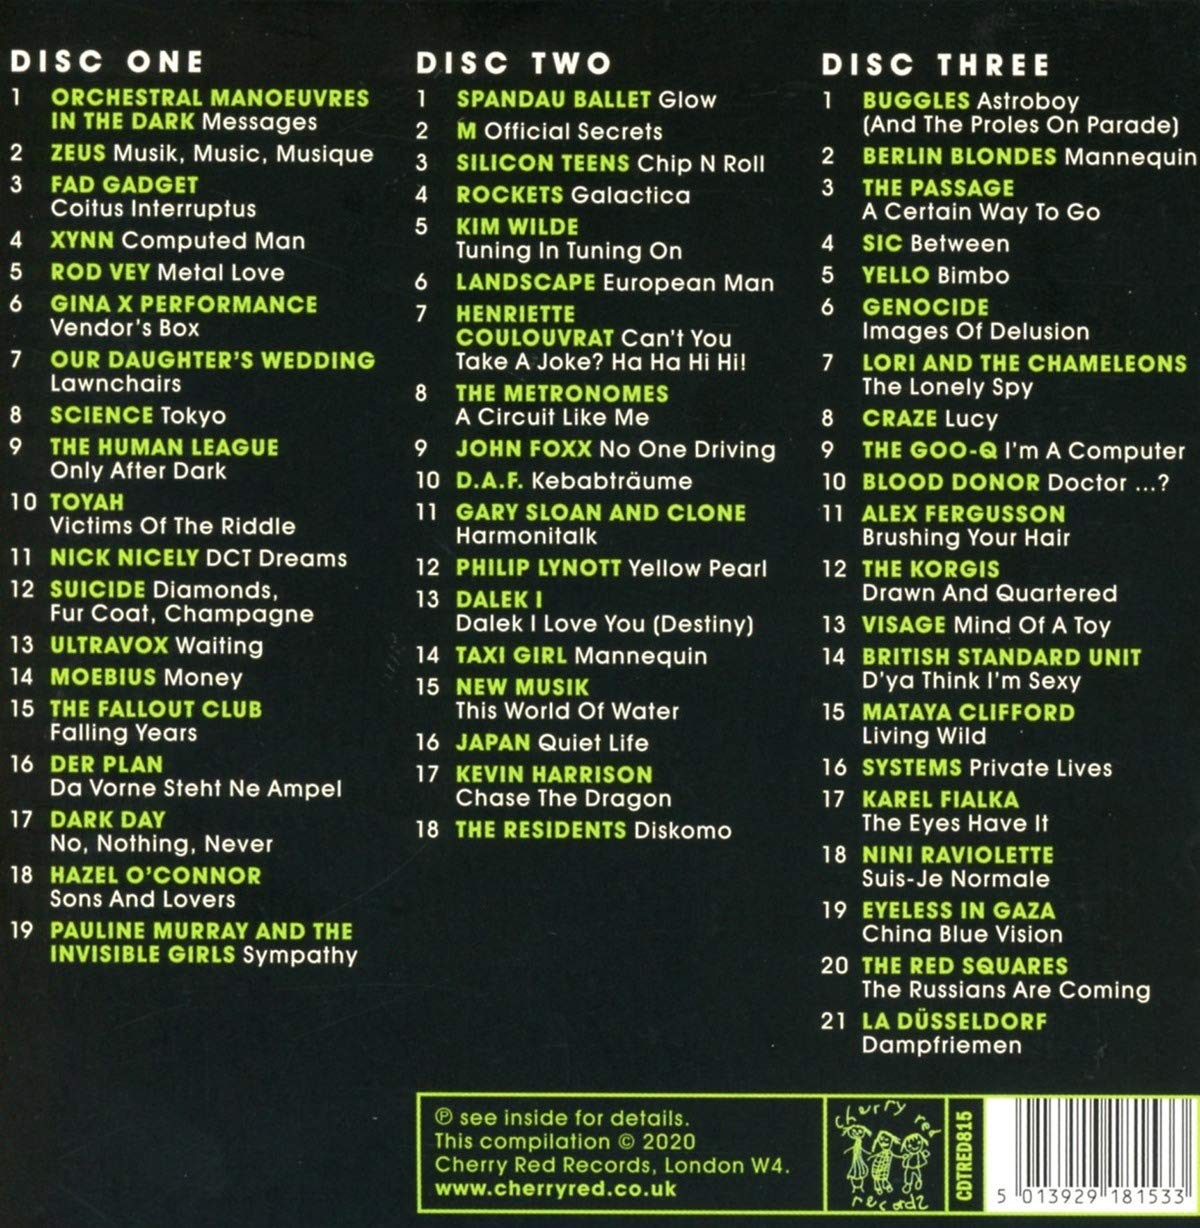 신스 팝 모음집 (Musik Music Musique :1980 - The Dawn Of Synth Pop)